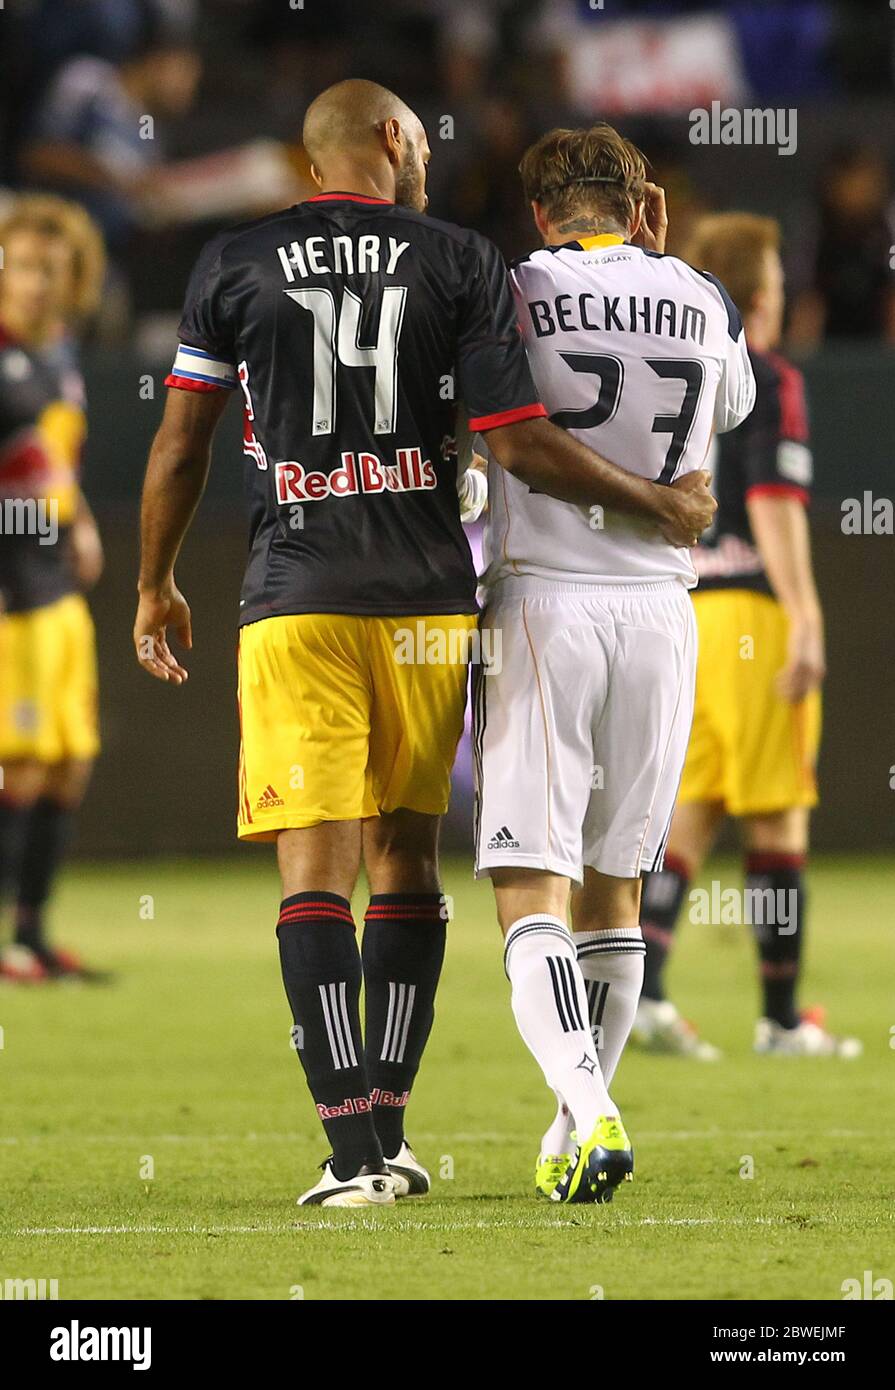 David Beckham in Aktion für Los Angeles Galaxy gegen New York Red Bulls im MLS Play Off Spiel in Carson, Kalifornien. David und Thiery Henry kamen während des Spiels nah an und David trug auch seine neuen adidas Fußballschuhe. Stockfoto